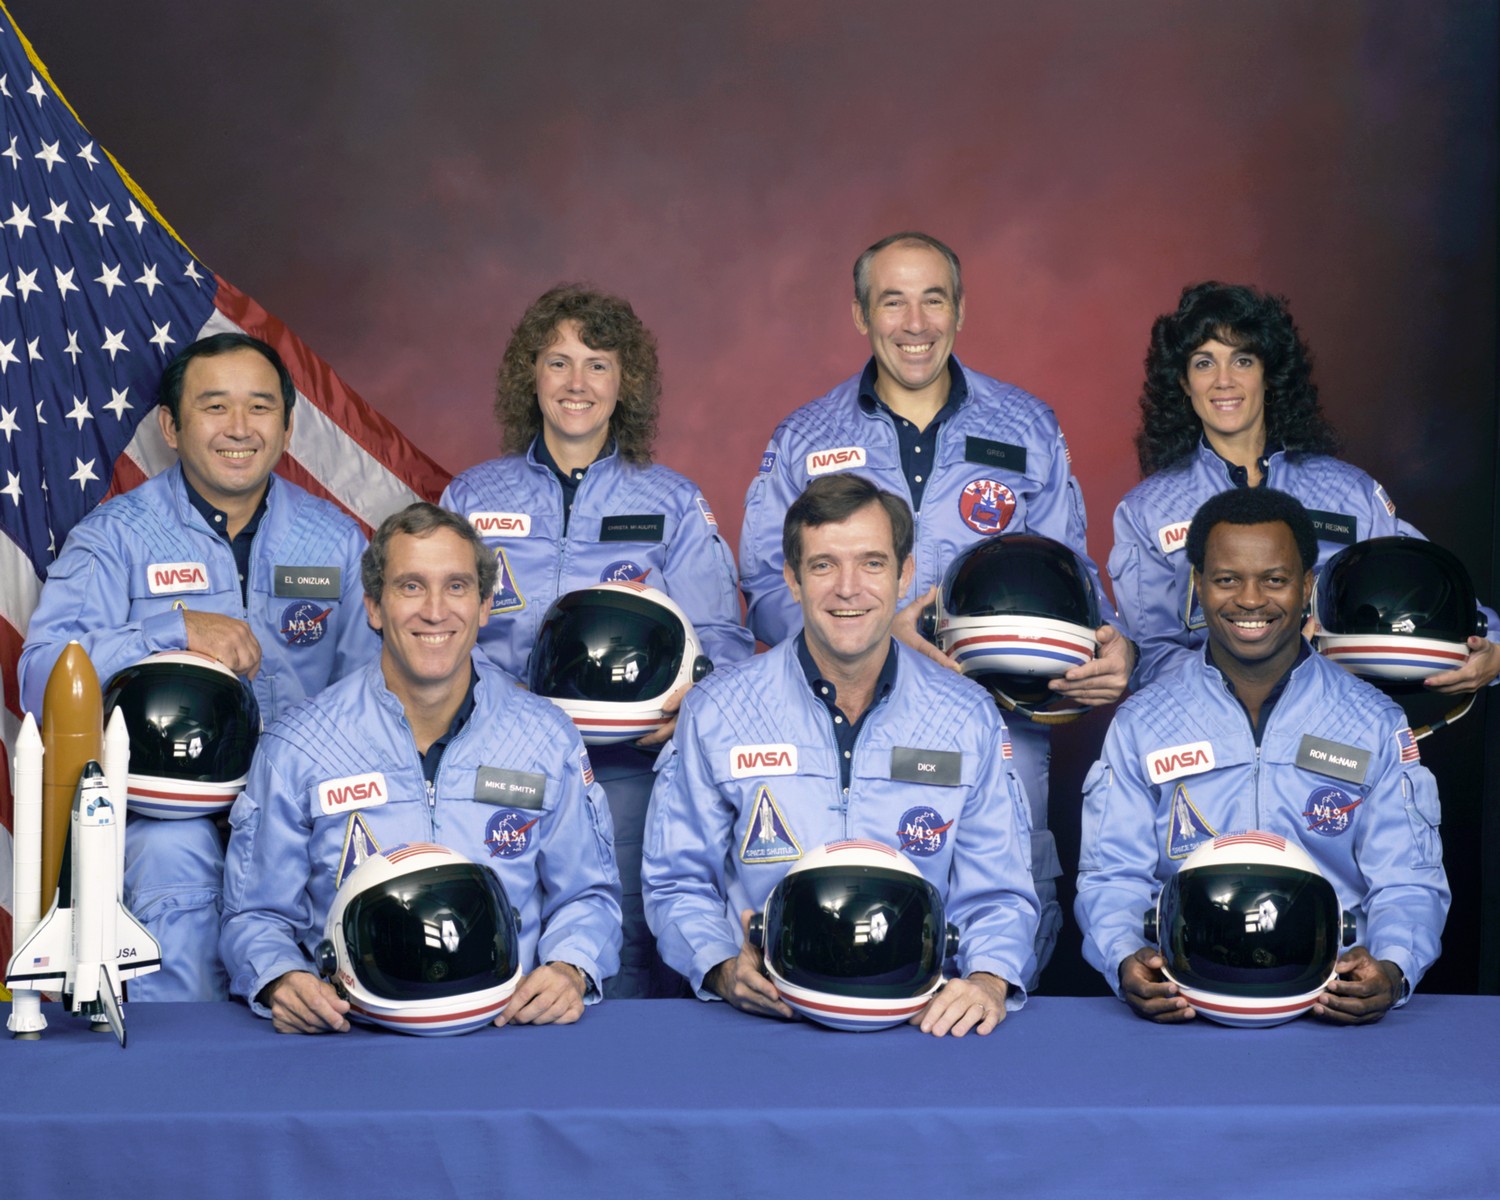 Экипаж экспедиции STS-51L, погибший при взлете космического корабля «Челленджер» 28 января 1986 г.